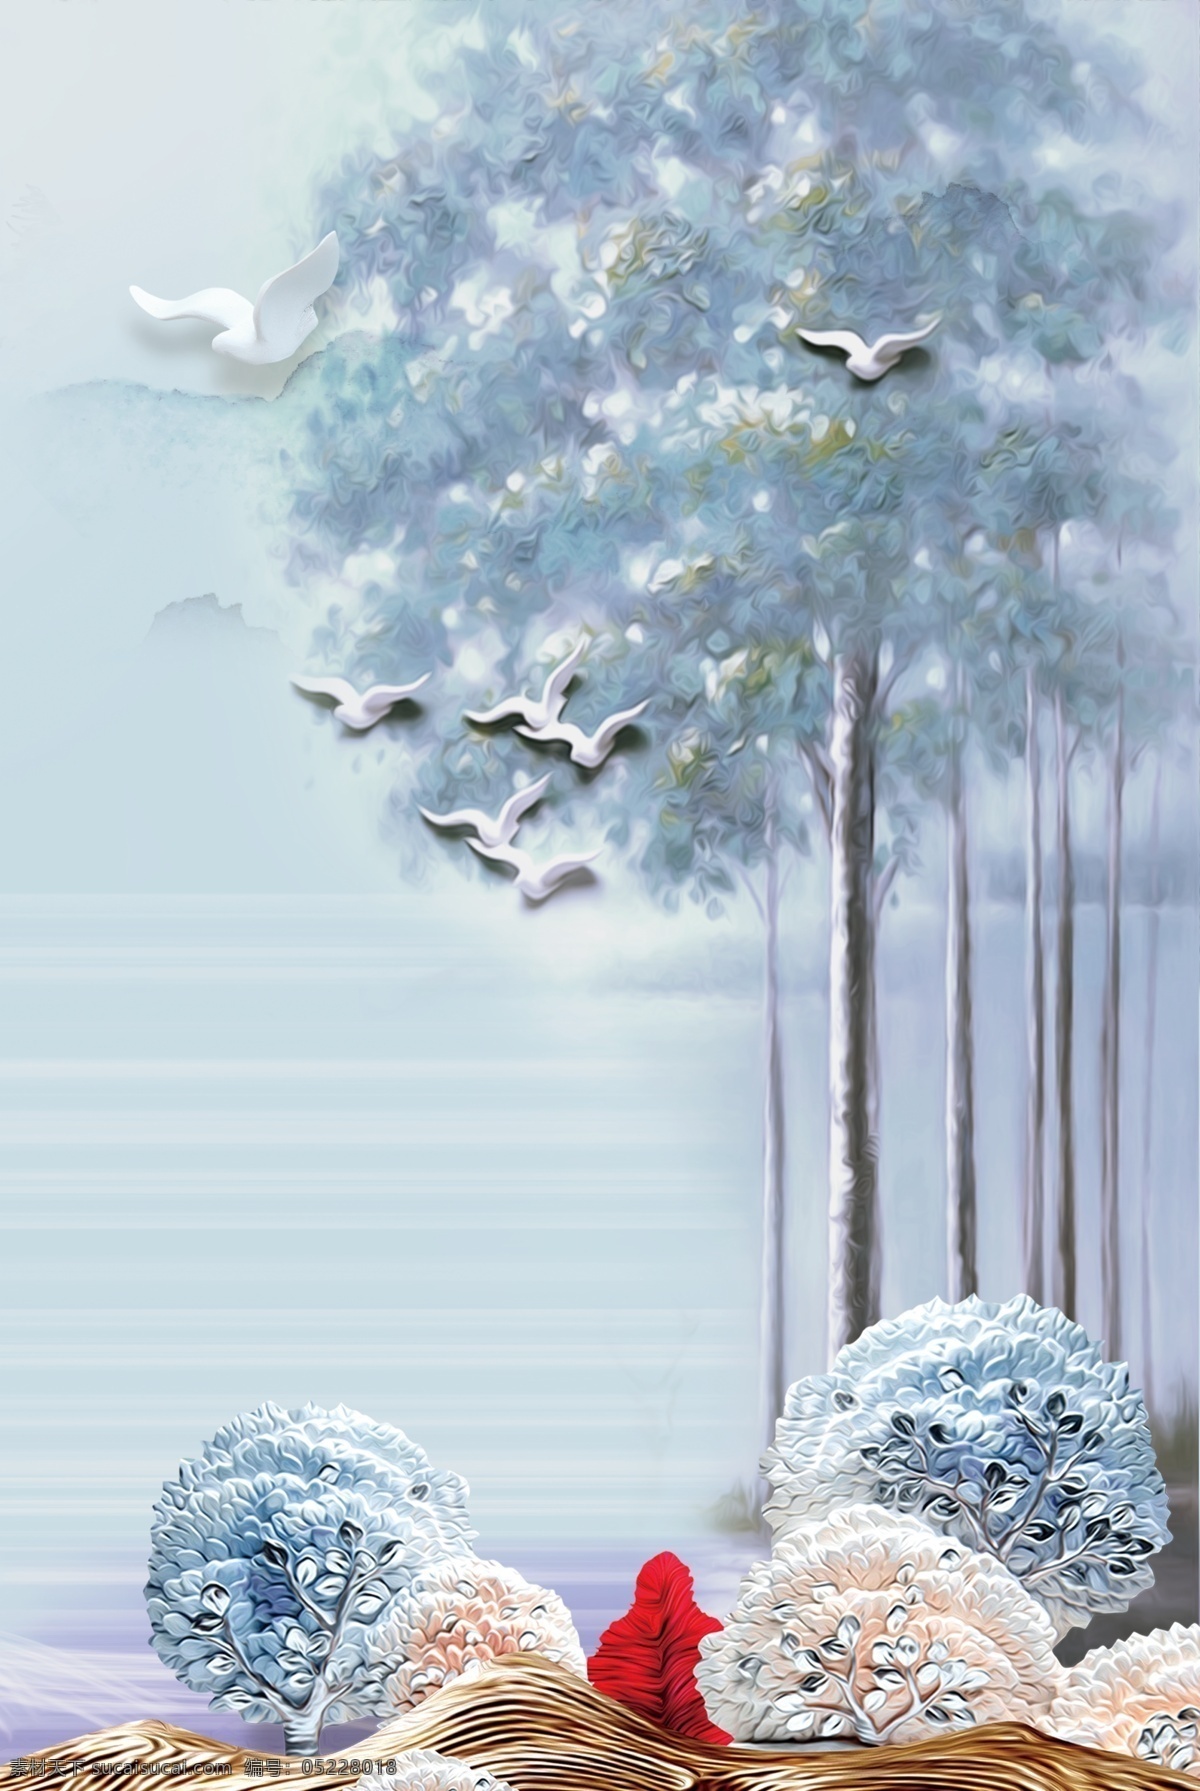 简约 清新 丛林 麋鹿 背景 浪漫 梦幻 唯美 背景素材 冬季 飞鸟